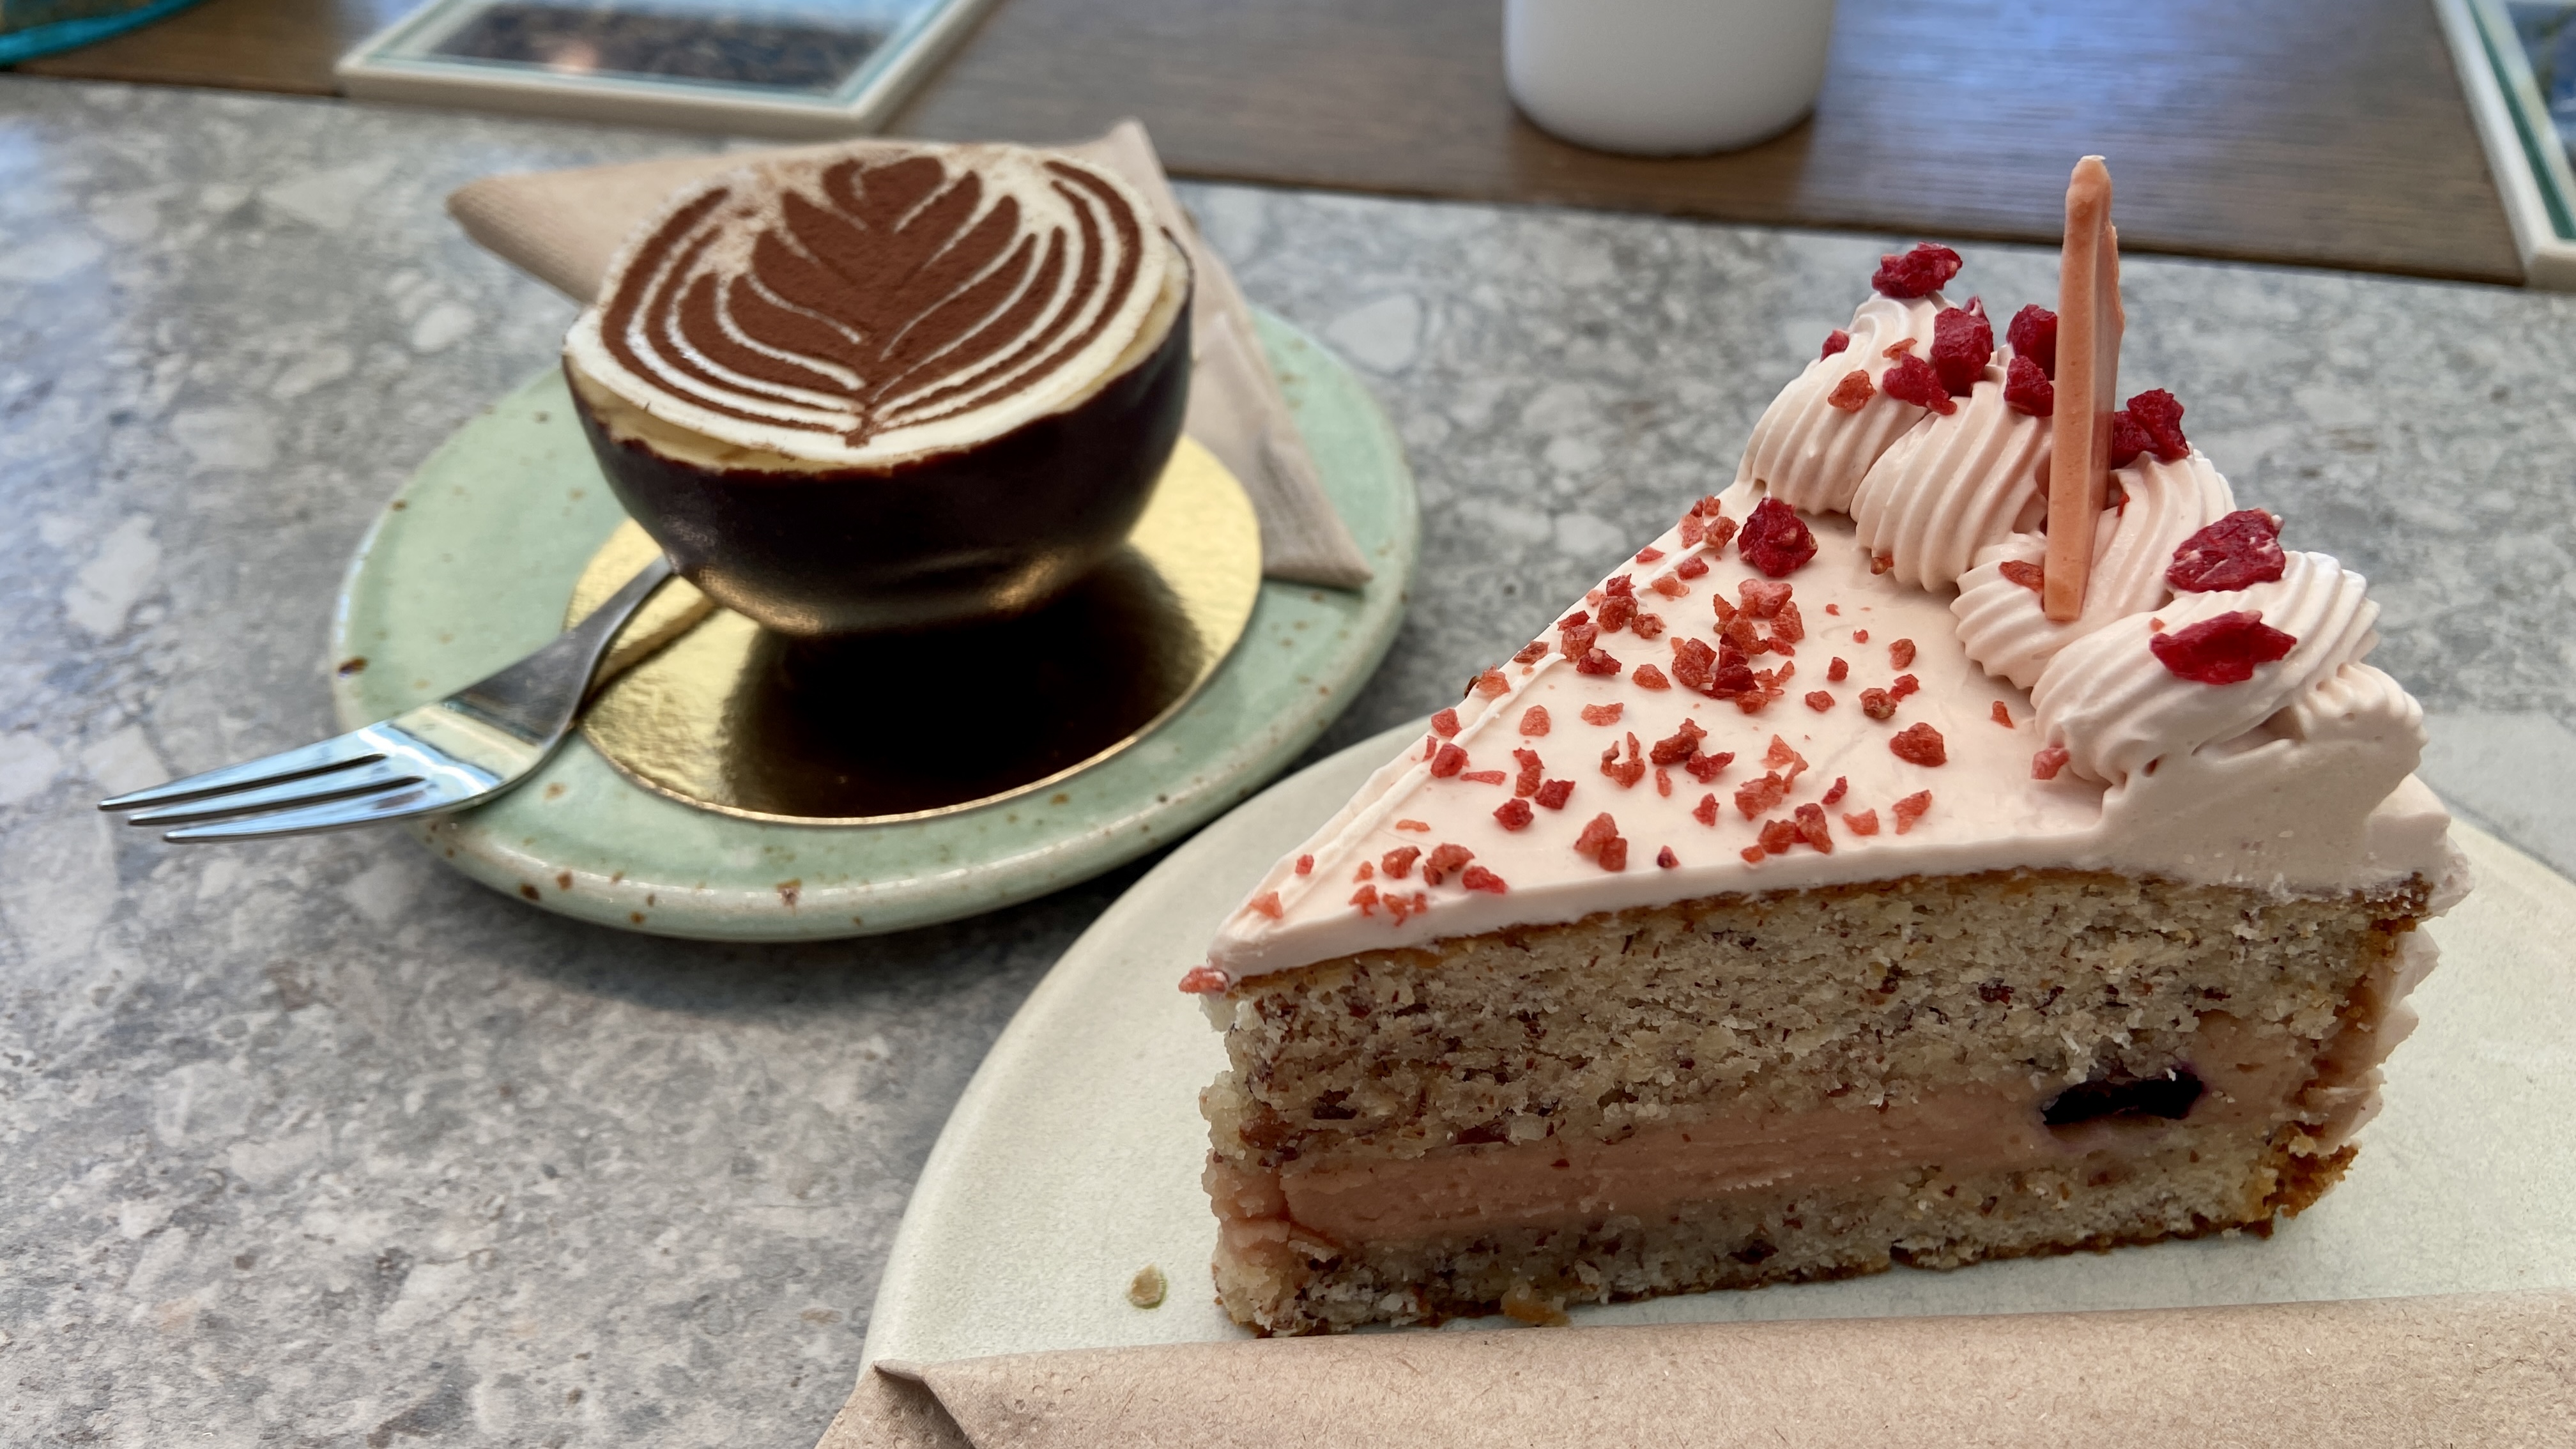 raspberry cake and tiramisu from zermatt cafe